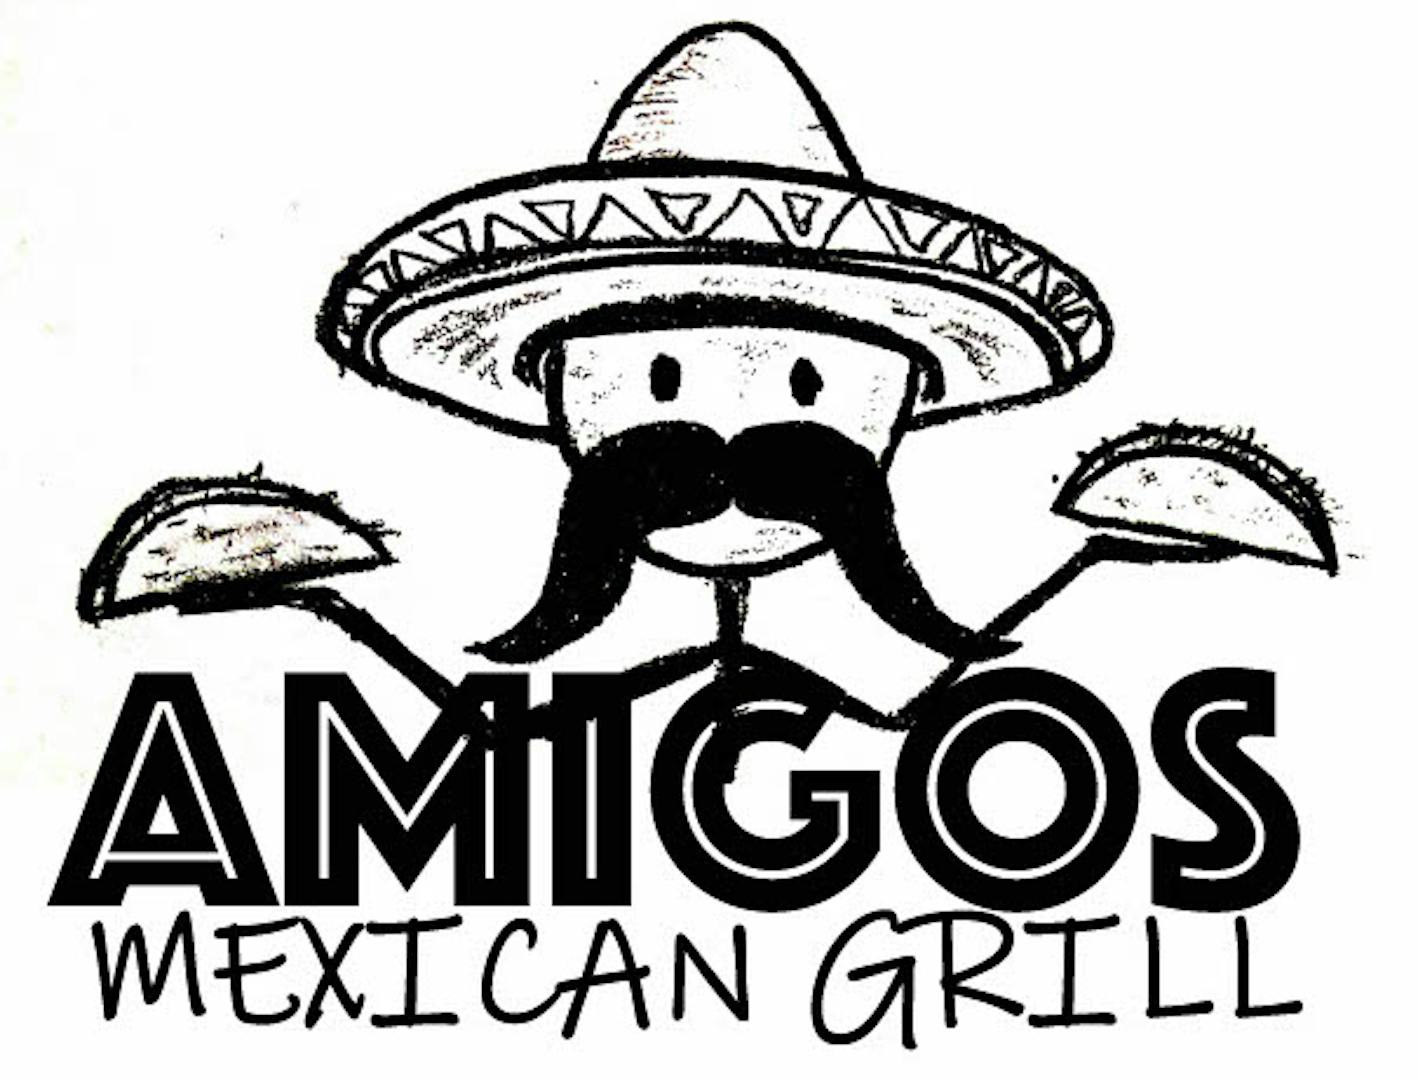 Home - Seis Amigos Mexican Restaurant